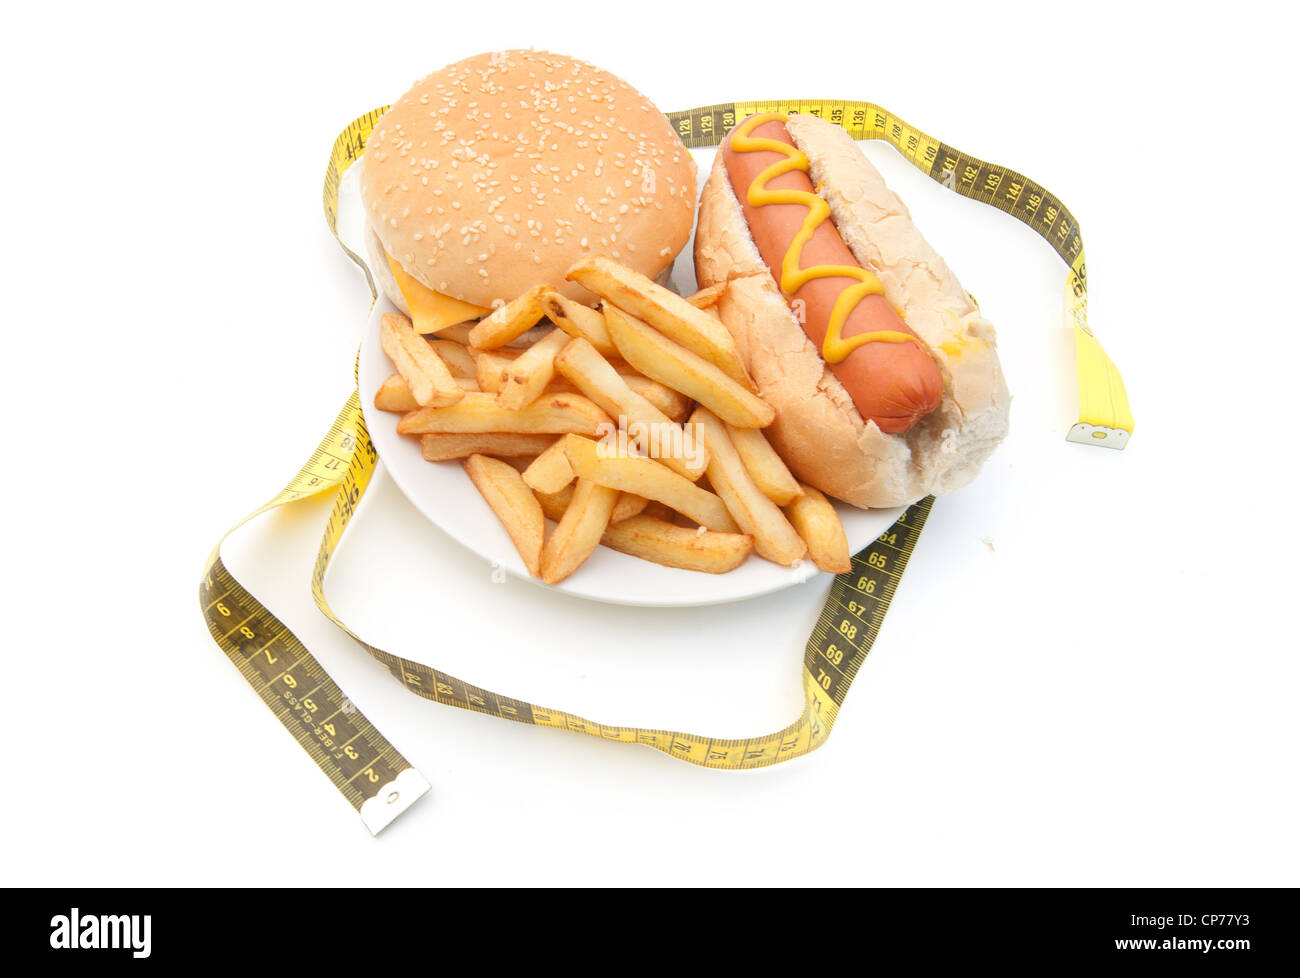 Maßband um eine Platte mit einem Cheeseburger, Pommes und Hot dog Stockfoto